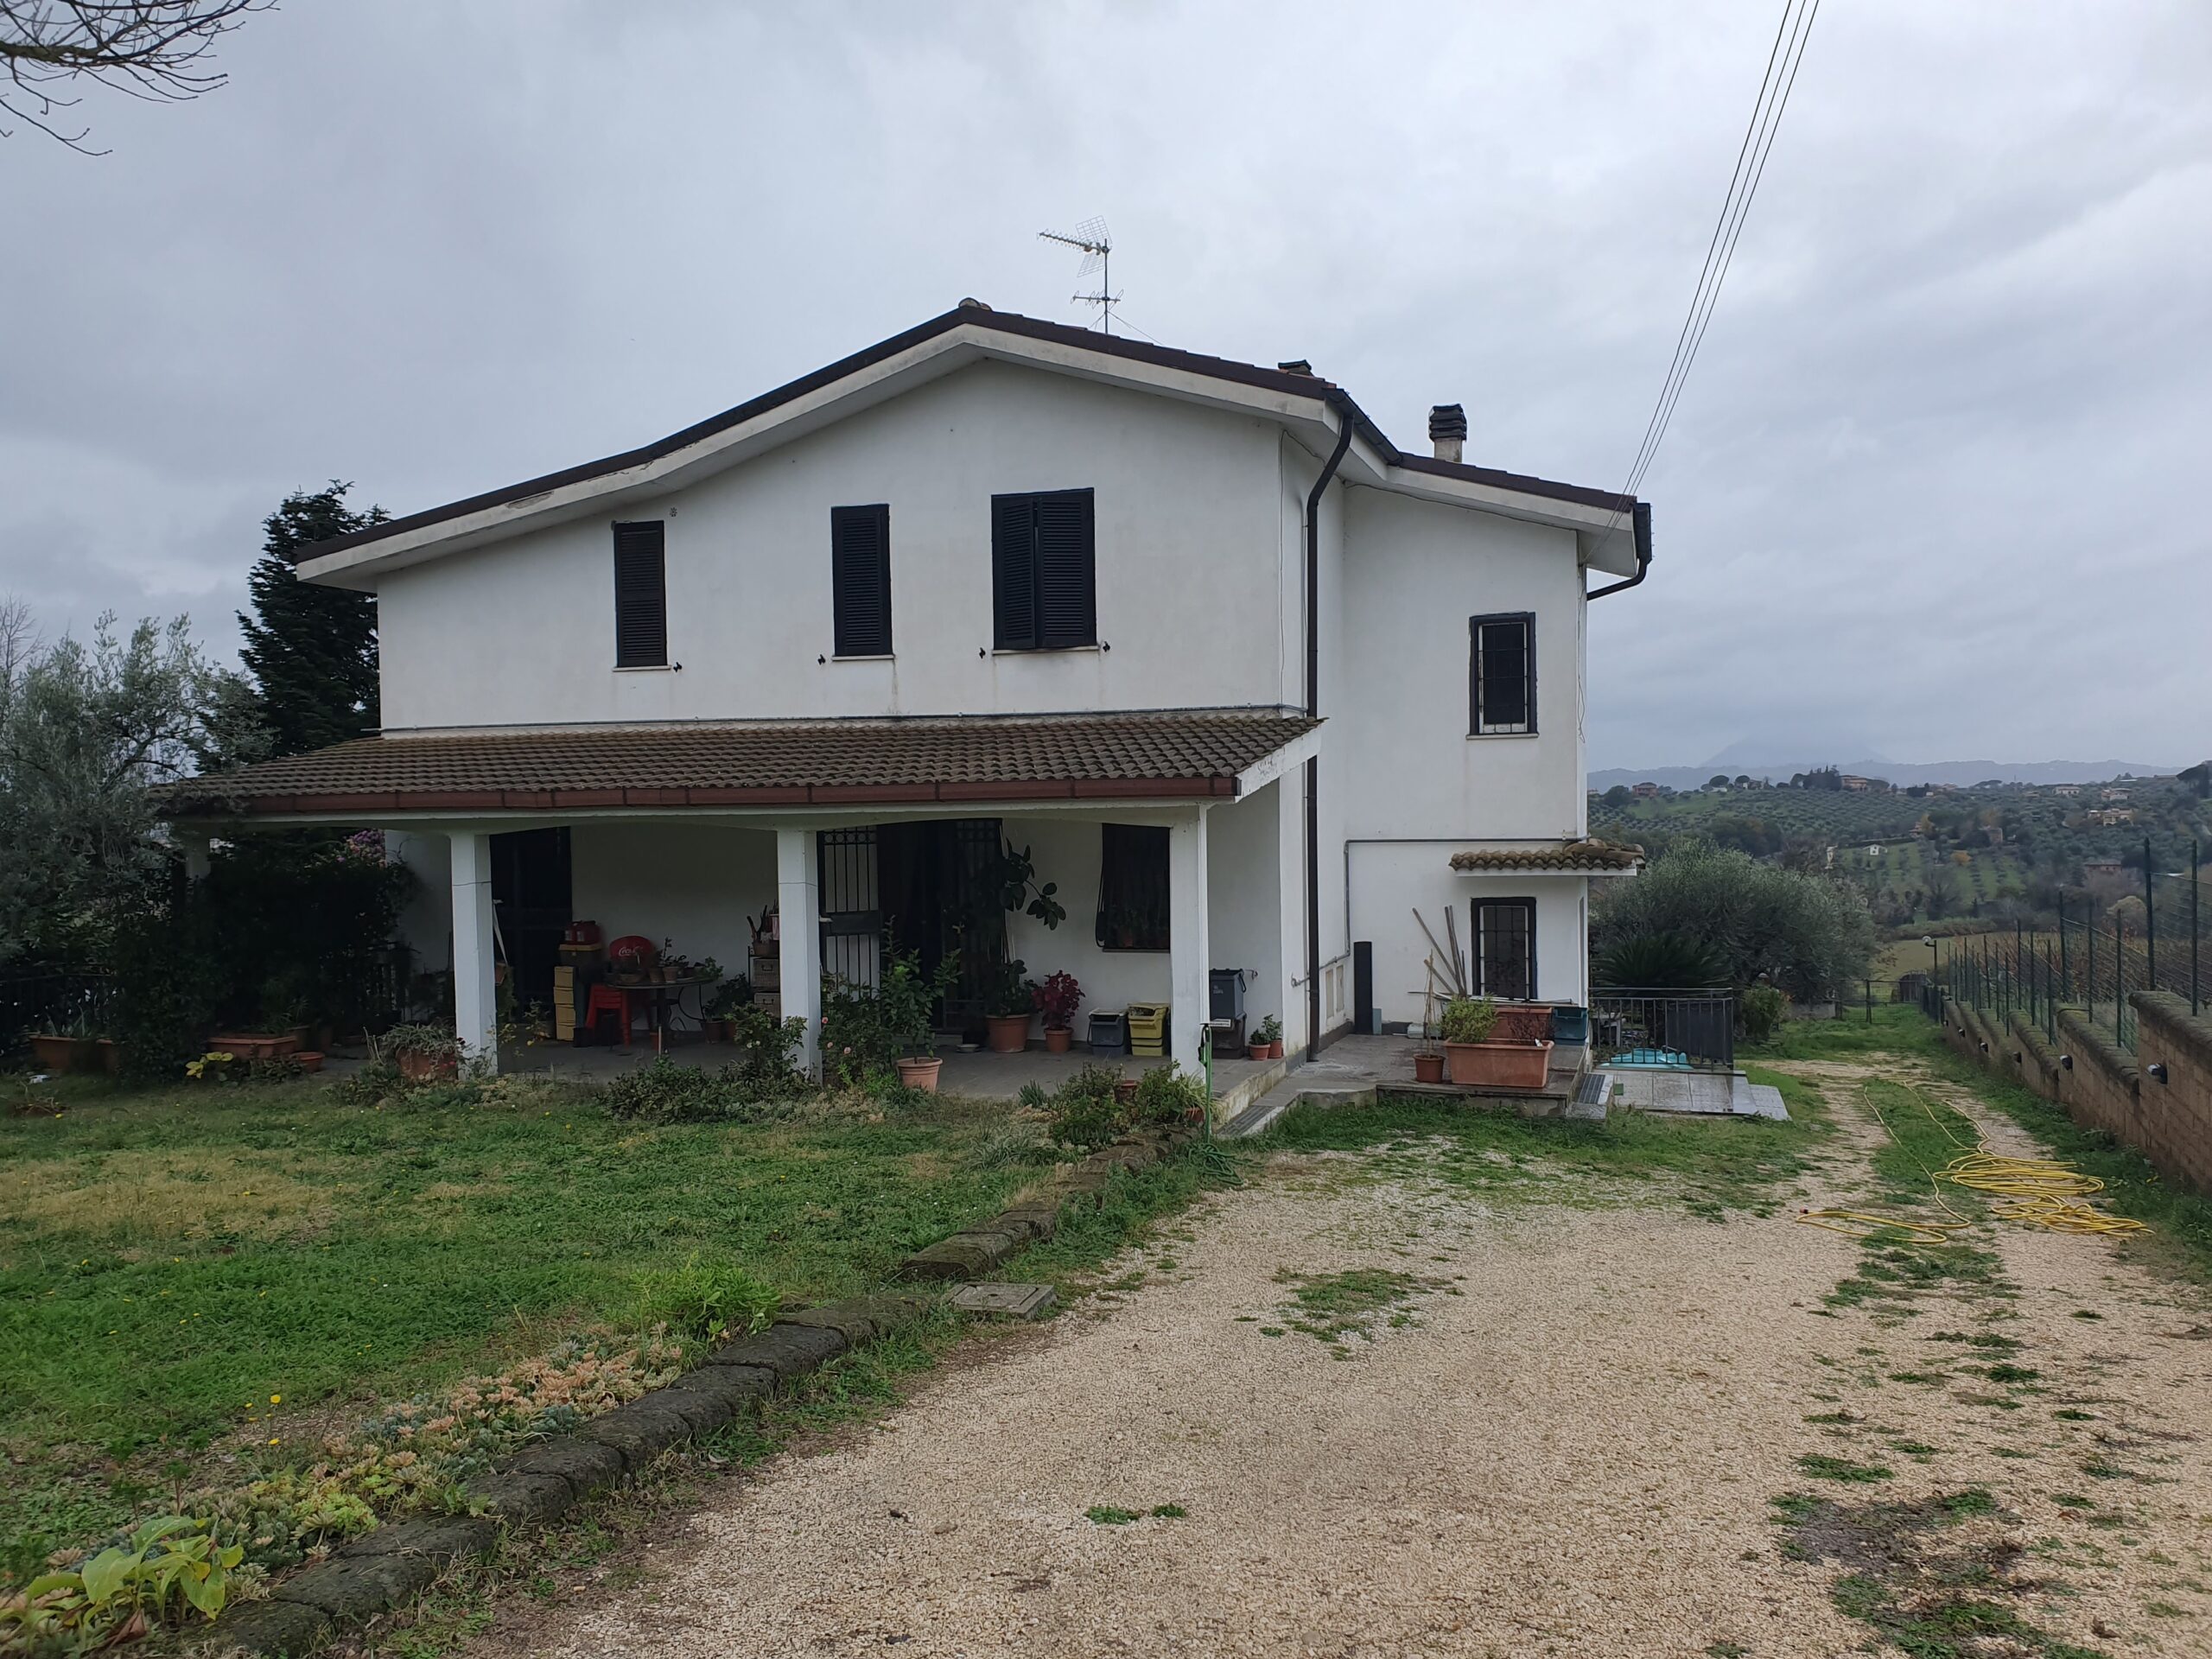 Villa unifamiliare Passo Corese Fara in Sabina